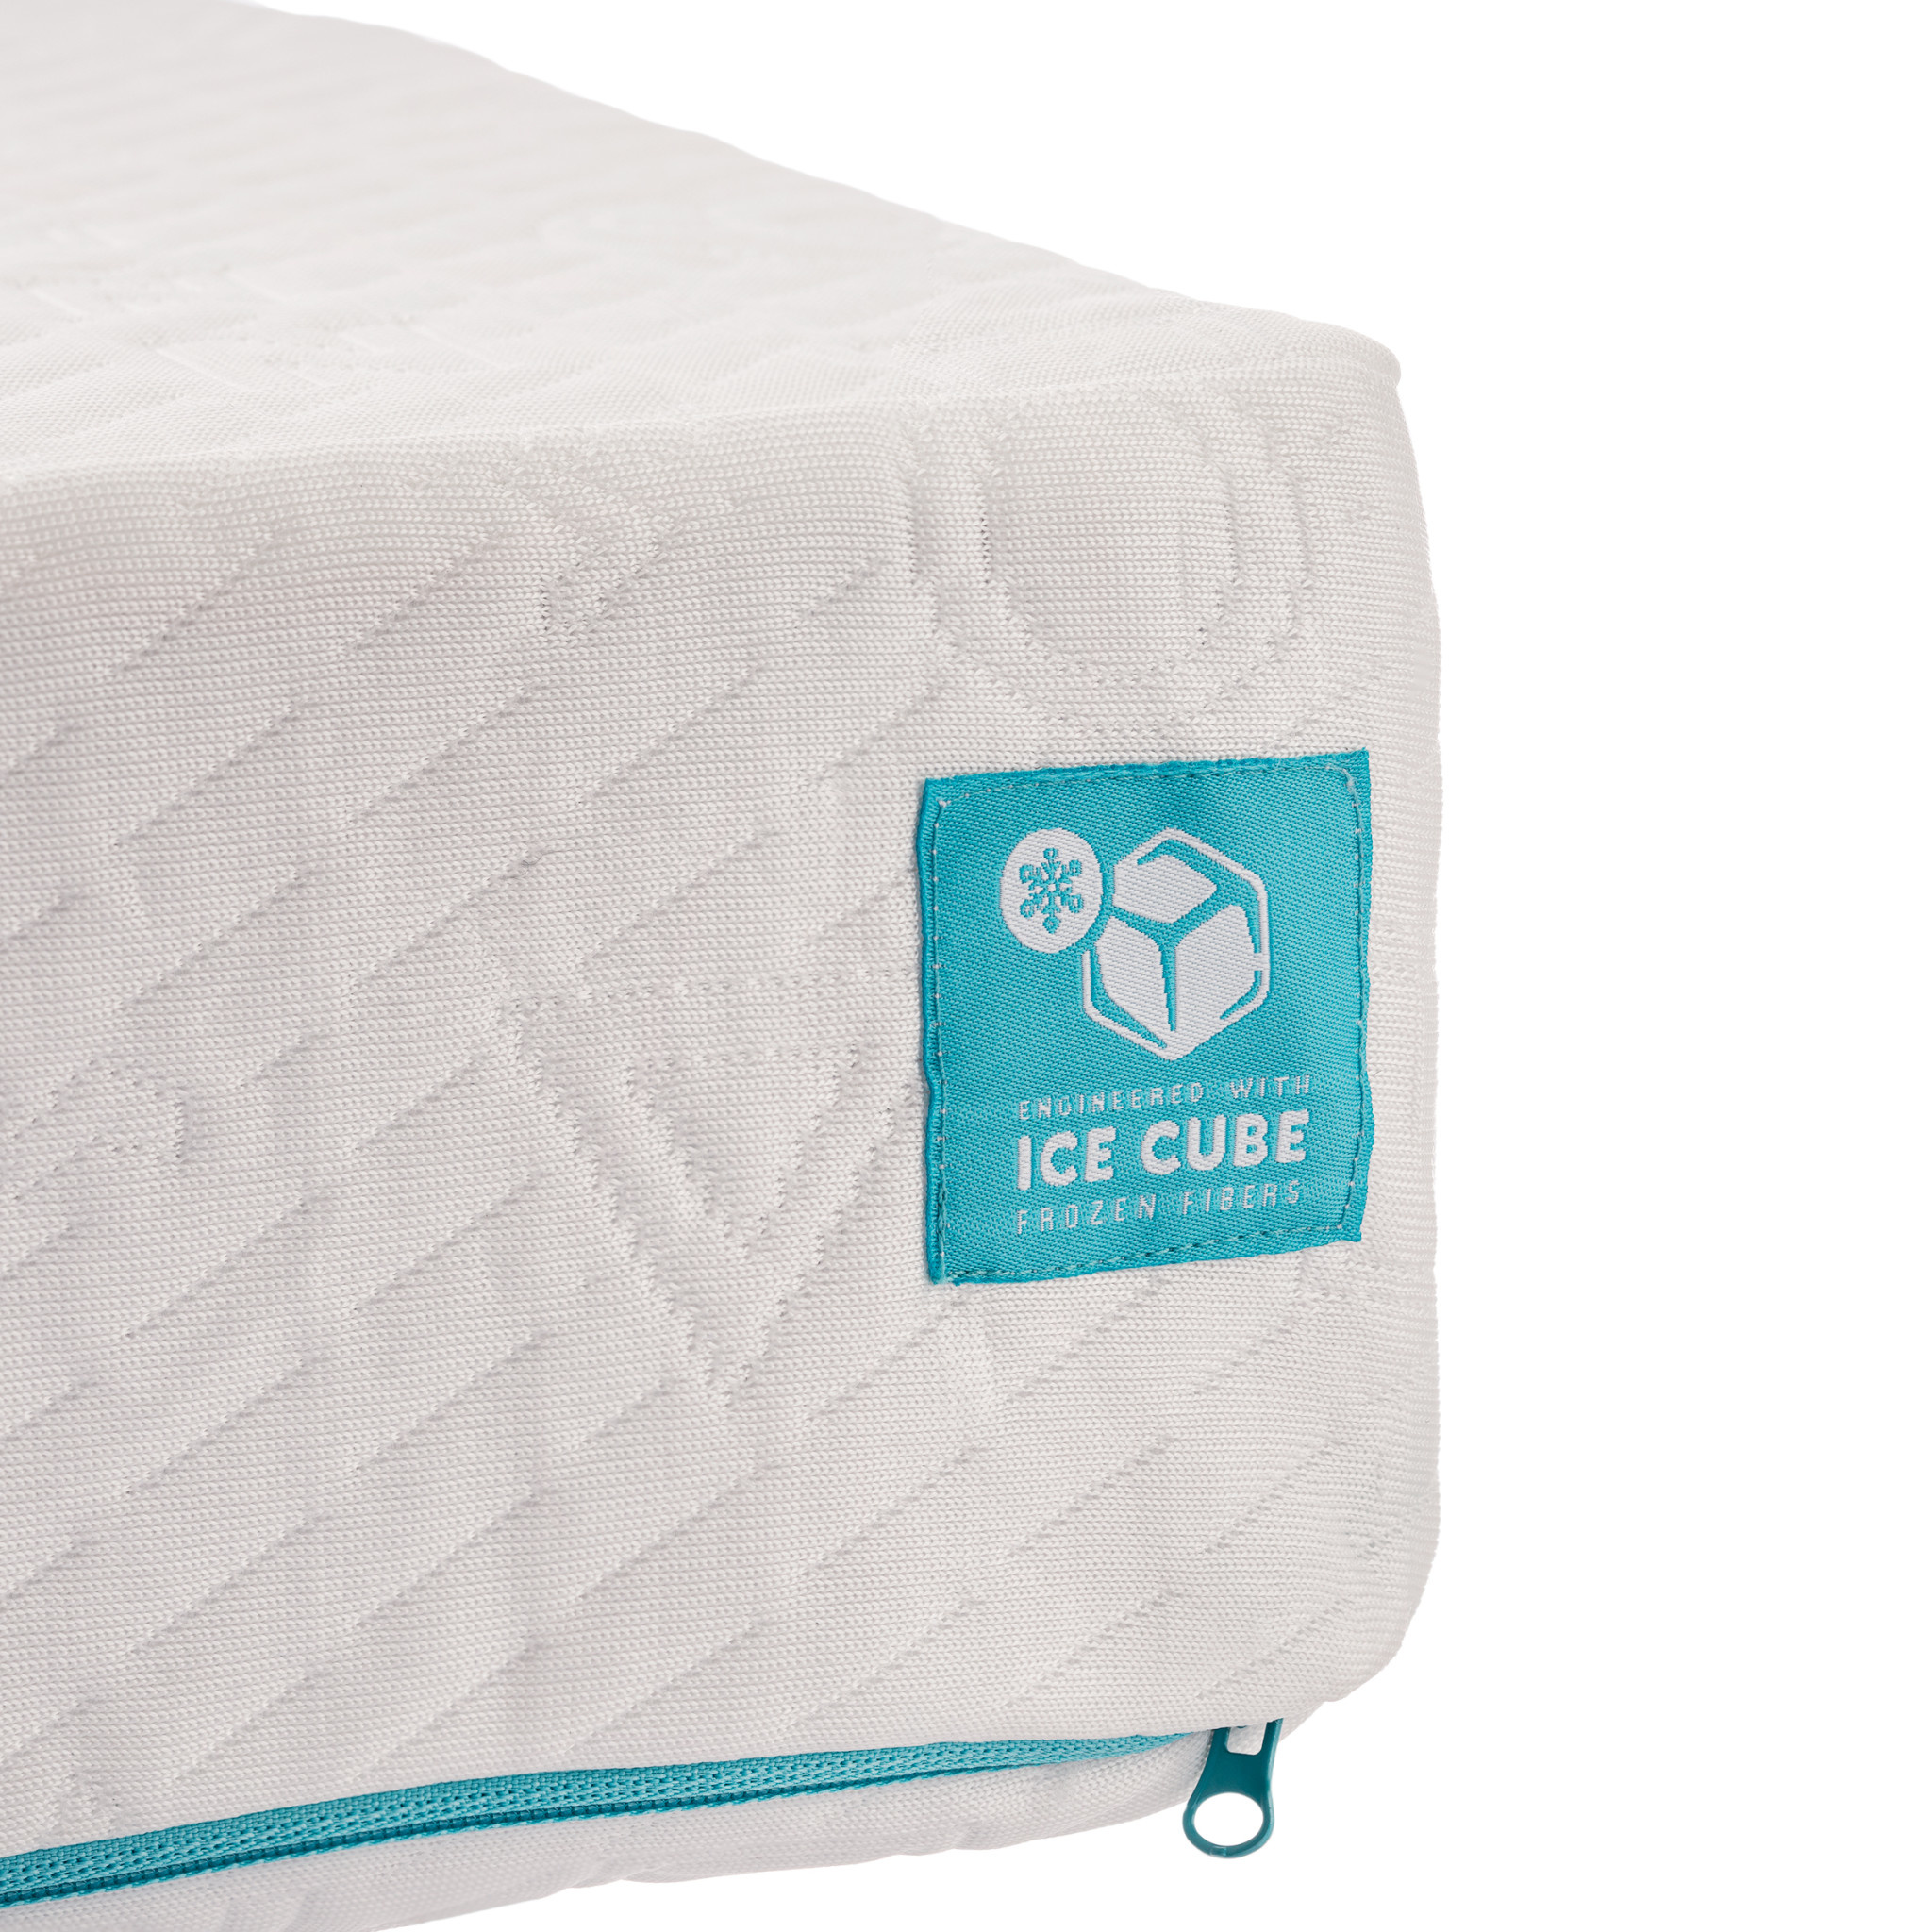 https://cdn.shoplightspeed.com/shops/625759/files/46554003/pillow-cube-side-sleeper-ice-cube-pillow.jpg